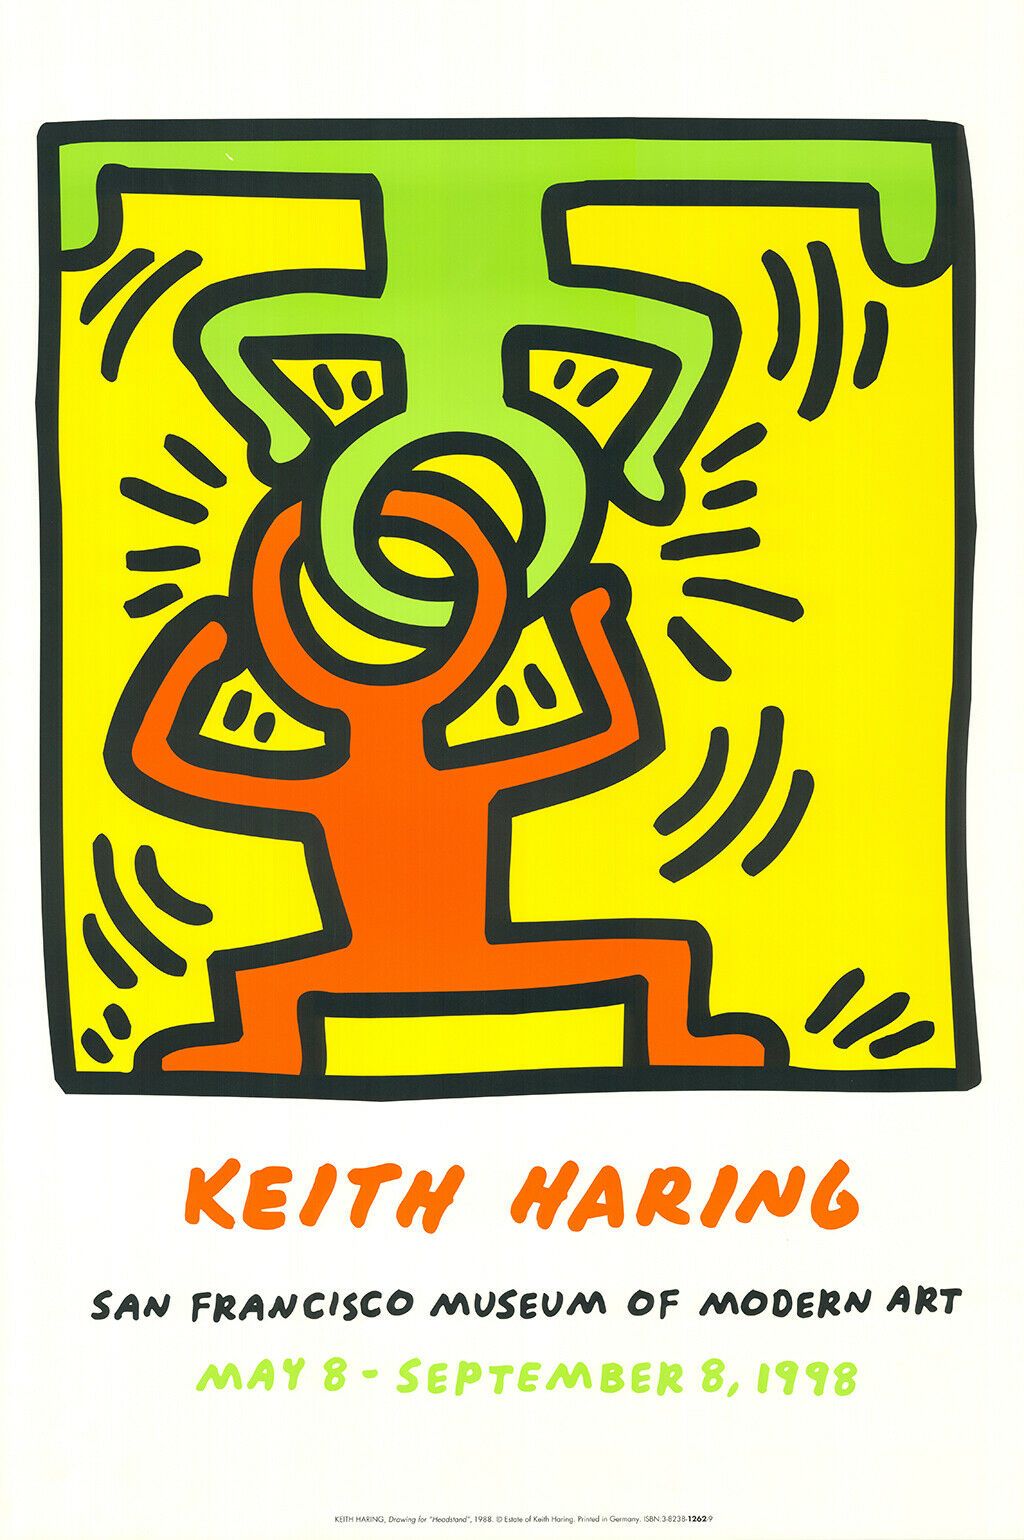 KEITH HARING 凯斯-哈林 (1958 - 1990)

(之后)

厚纸胶印，基于1988年的图画--为1998年在旧金山现代艺术博物馆的展览制作的&hellip;